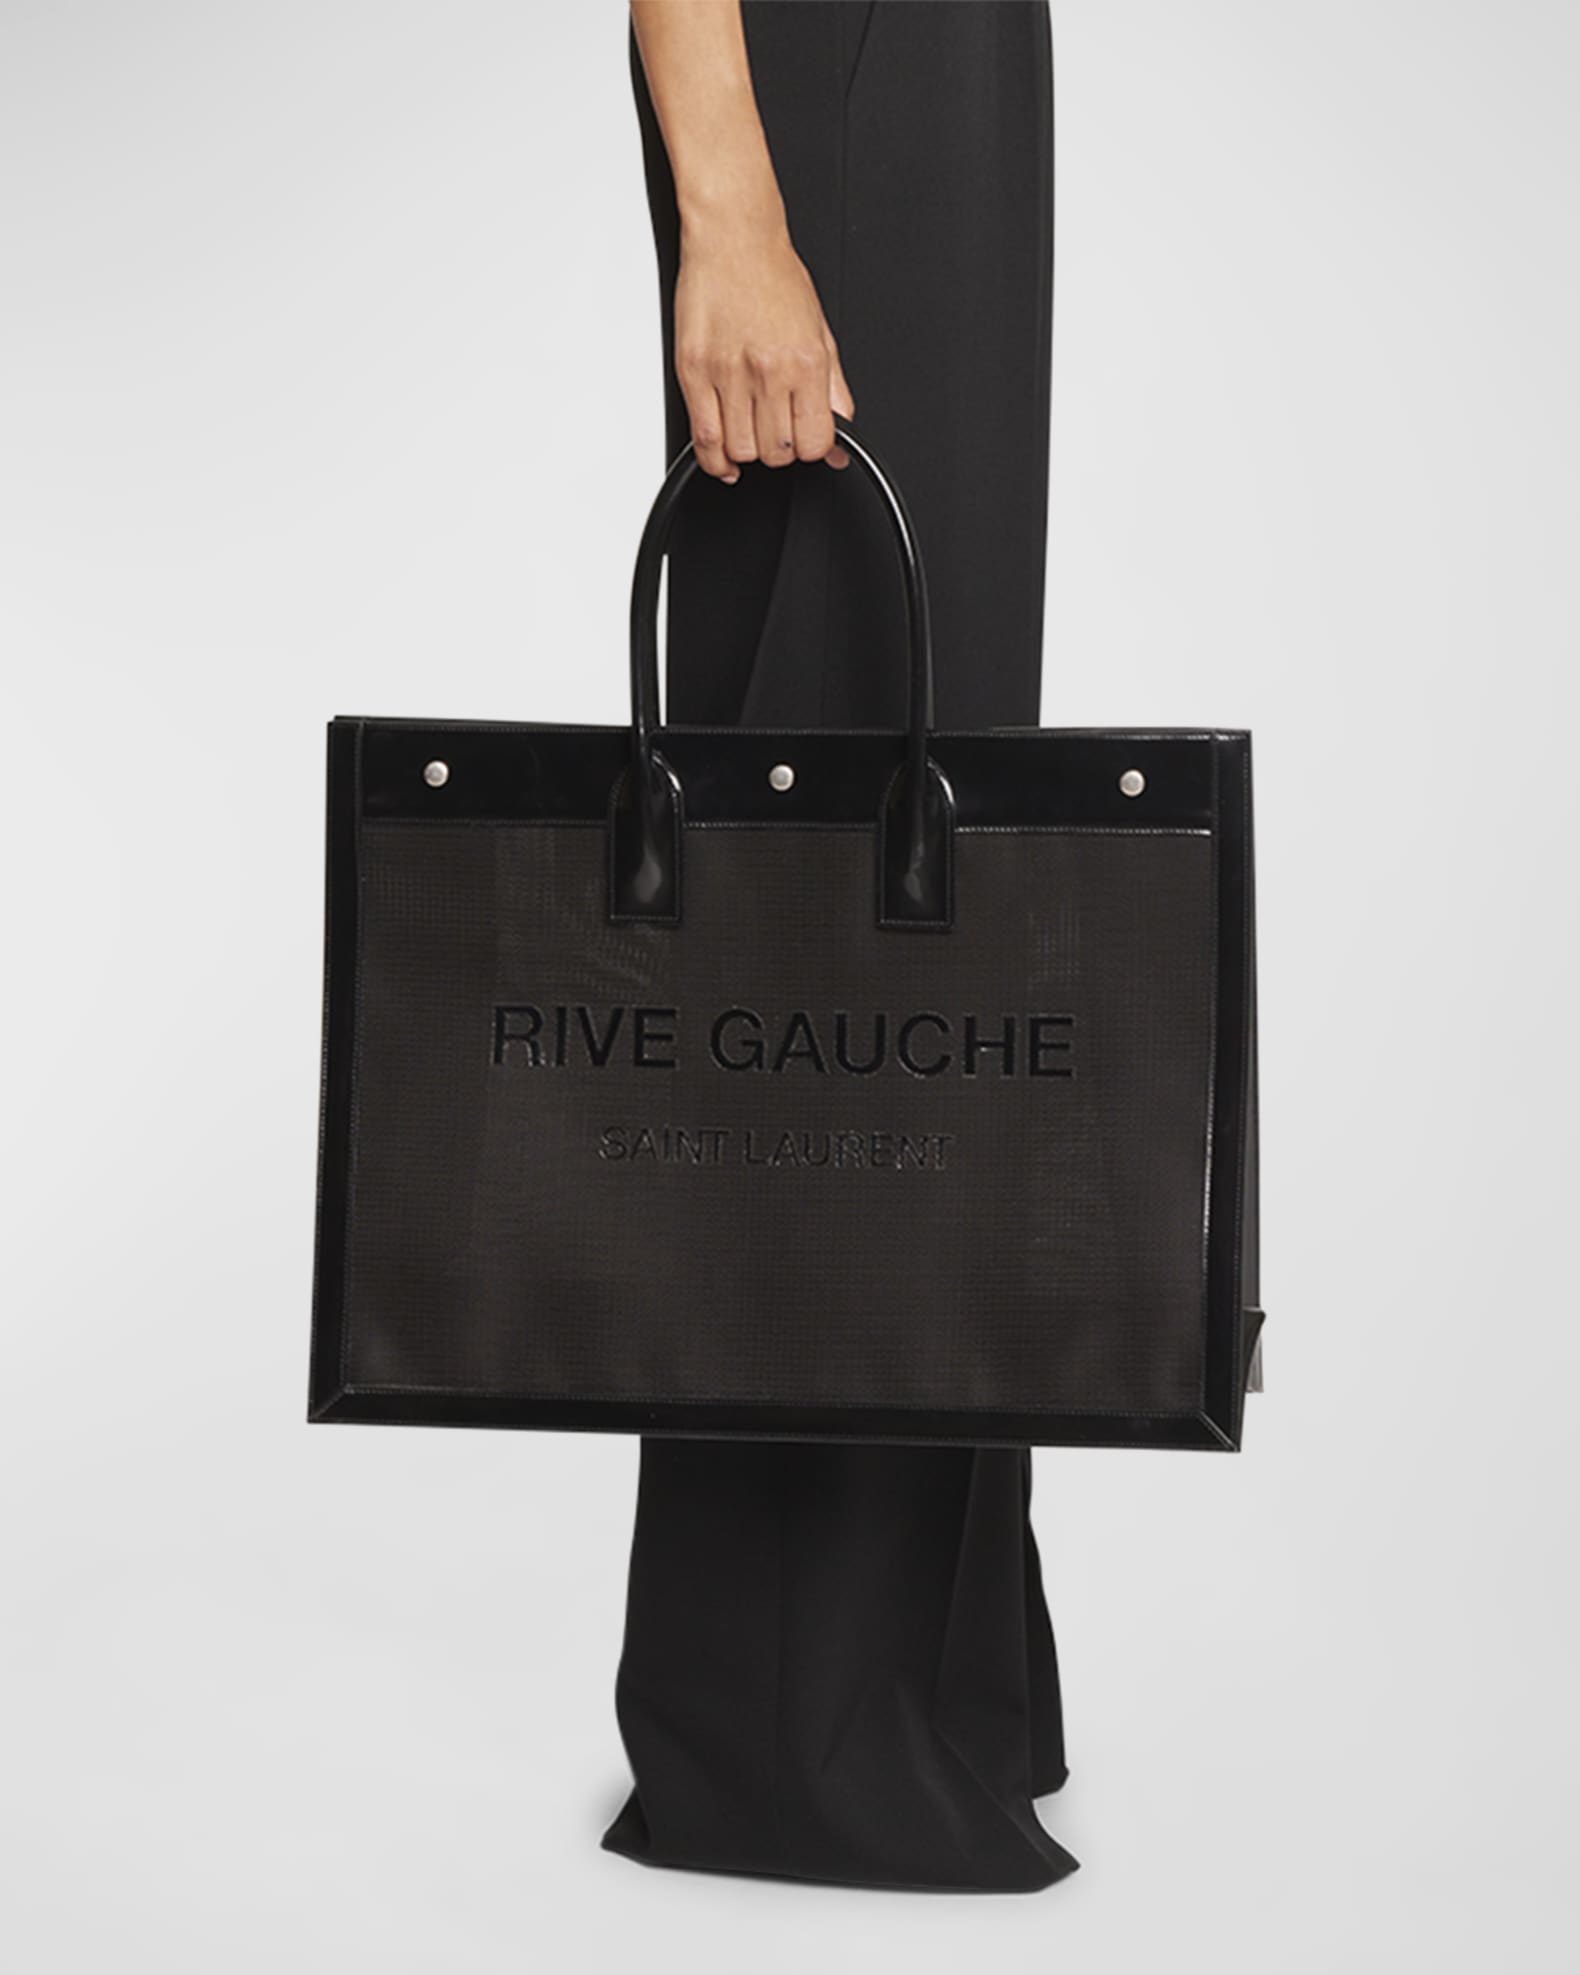 Saint Laurent Rive Gauche Leather Tote Bag - Black